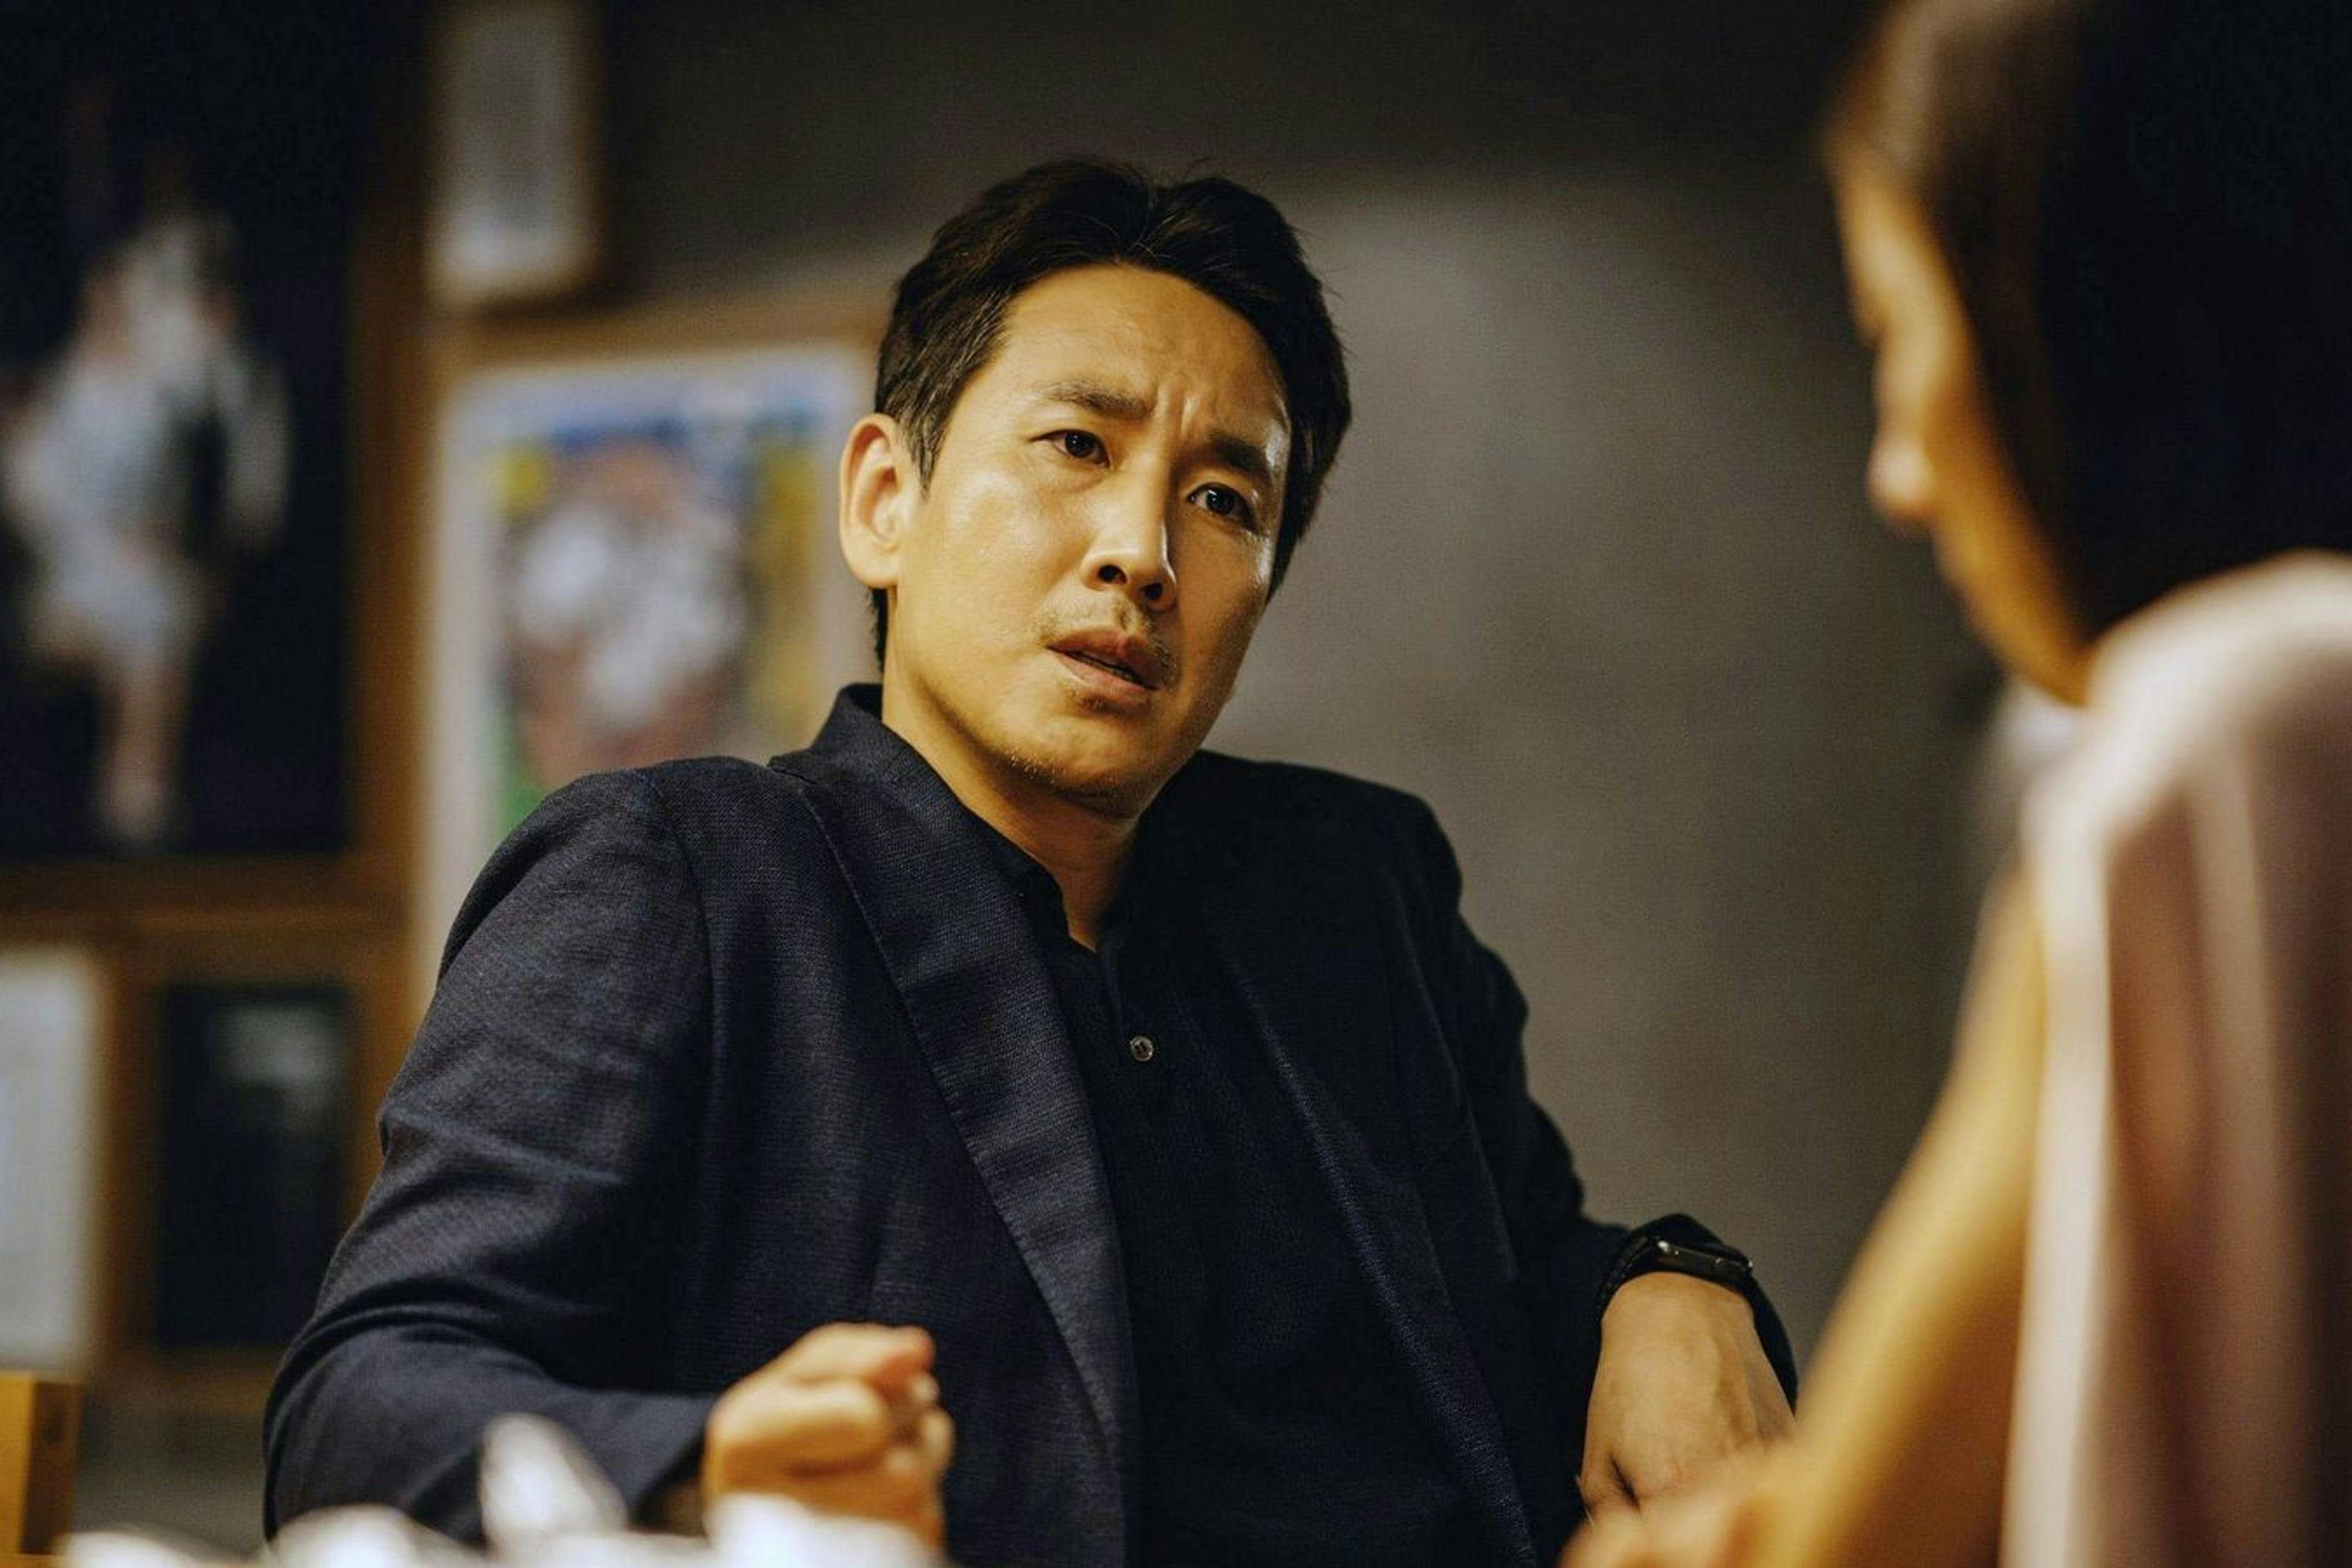 El actor Lee Sun-kyun, en un fotograma promocional de la película 'Parásitos'